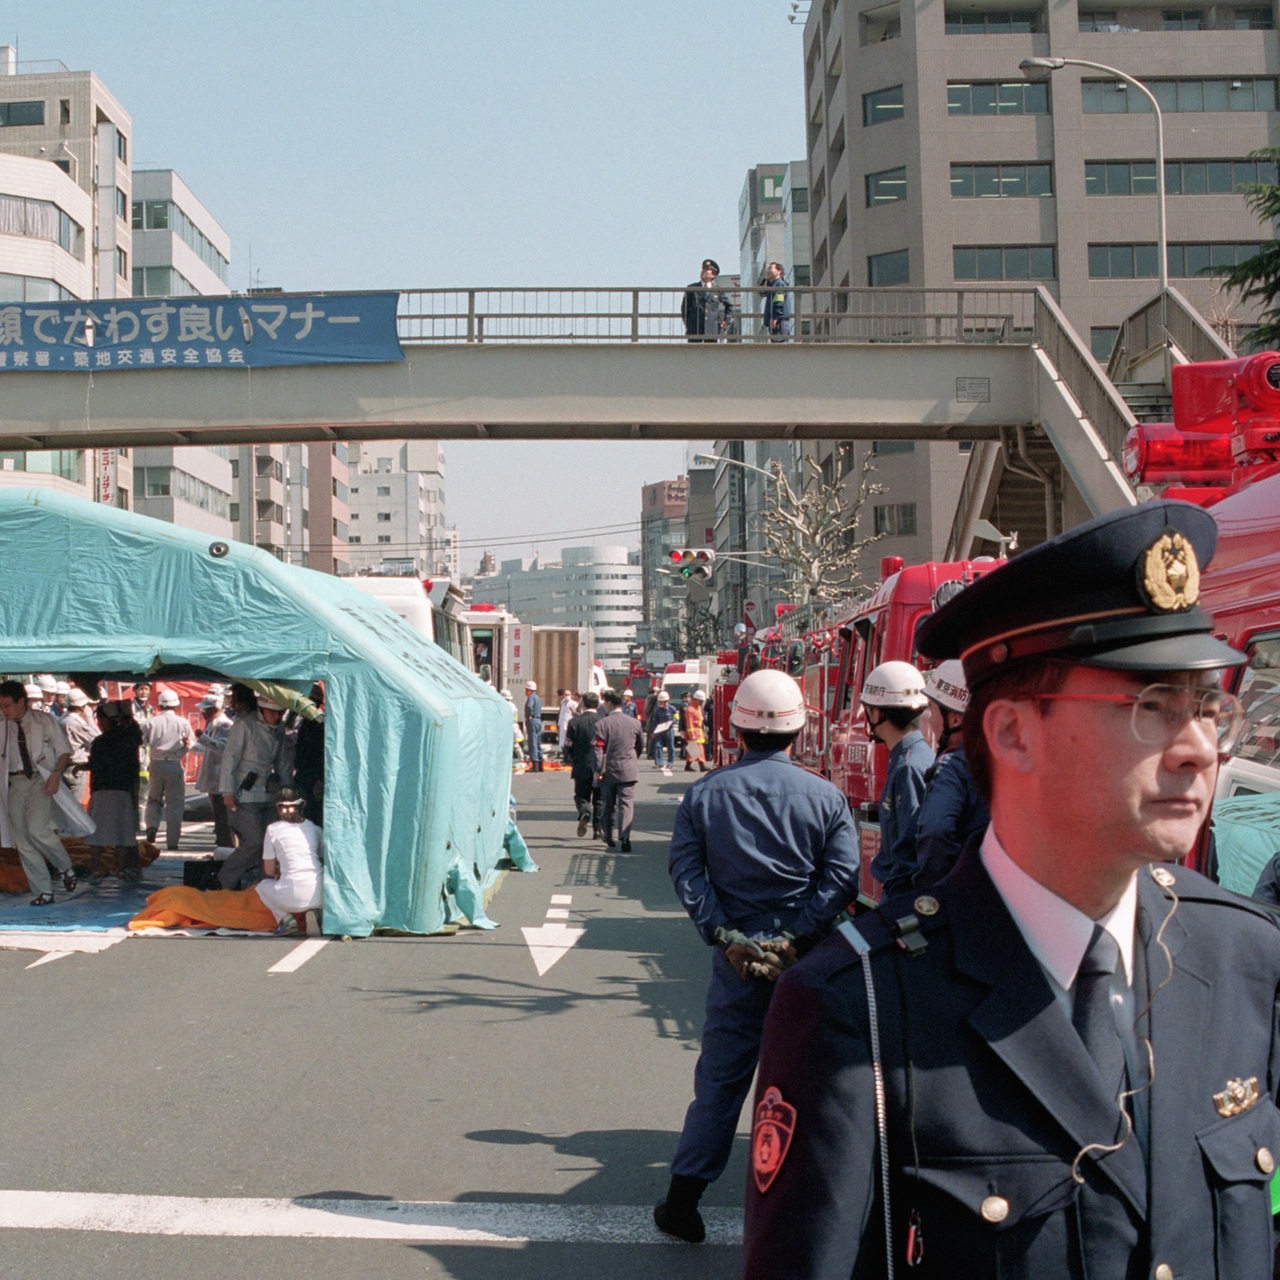 Evakuierung durch Rettungskräfte nach den Giftgasanschlägen in der Tokioter U-Bahn am 20. März 1995